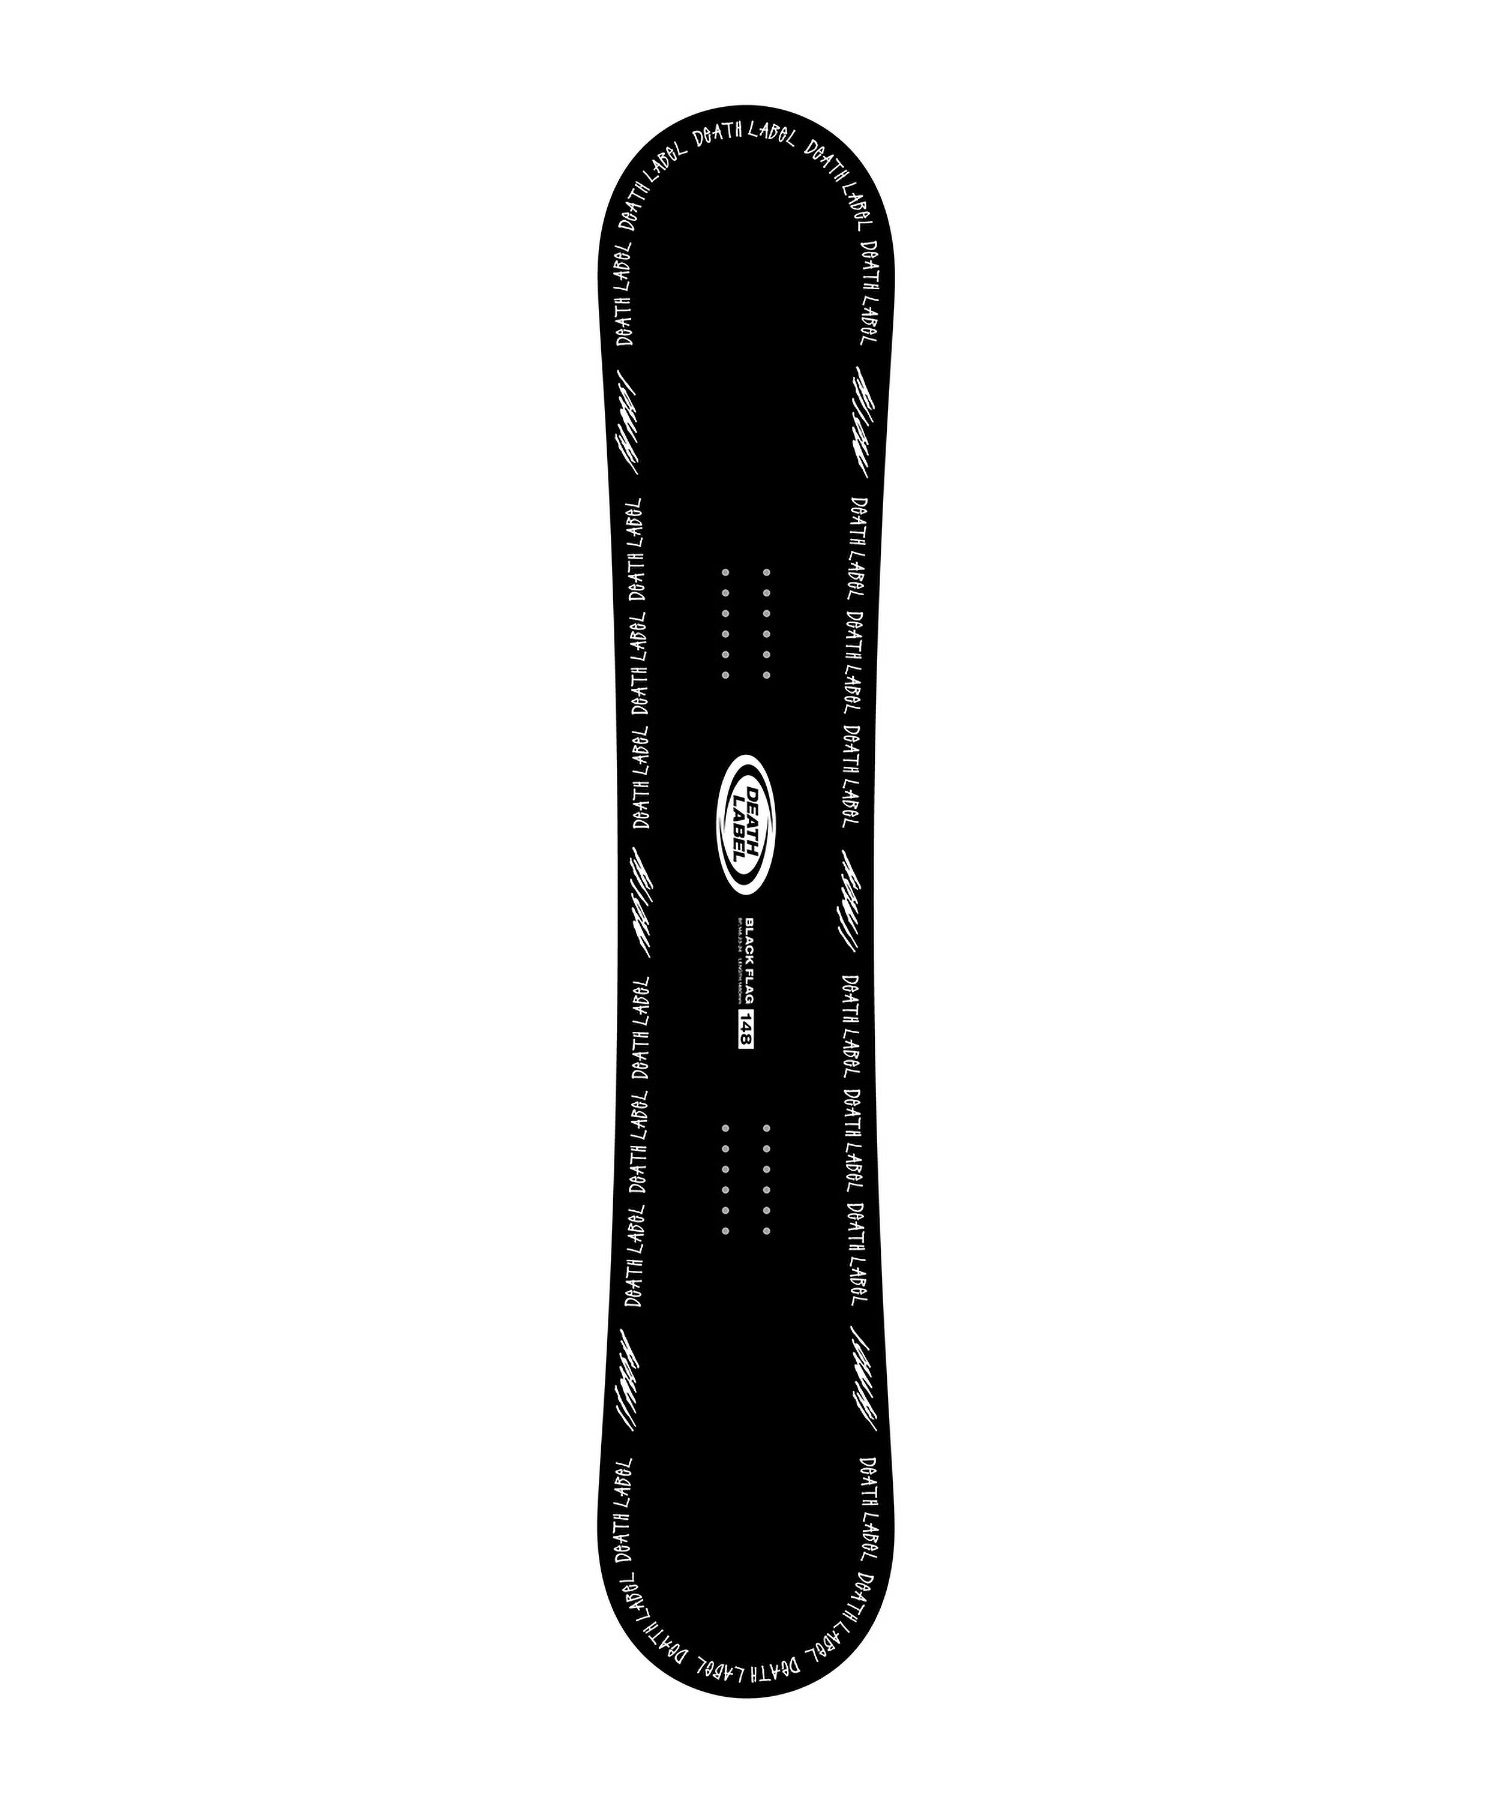 スノーボード 板 ユニセックス DEATH LABEL デスレーベル BLACKFLAG 23-24モデル ムラサキスポーツ KK C2(BLACKFLAG-137cm)